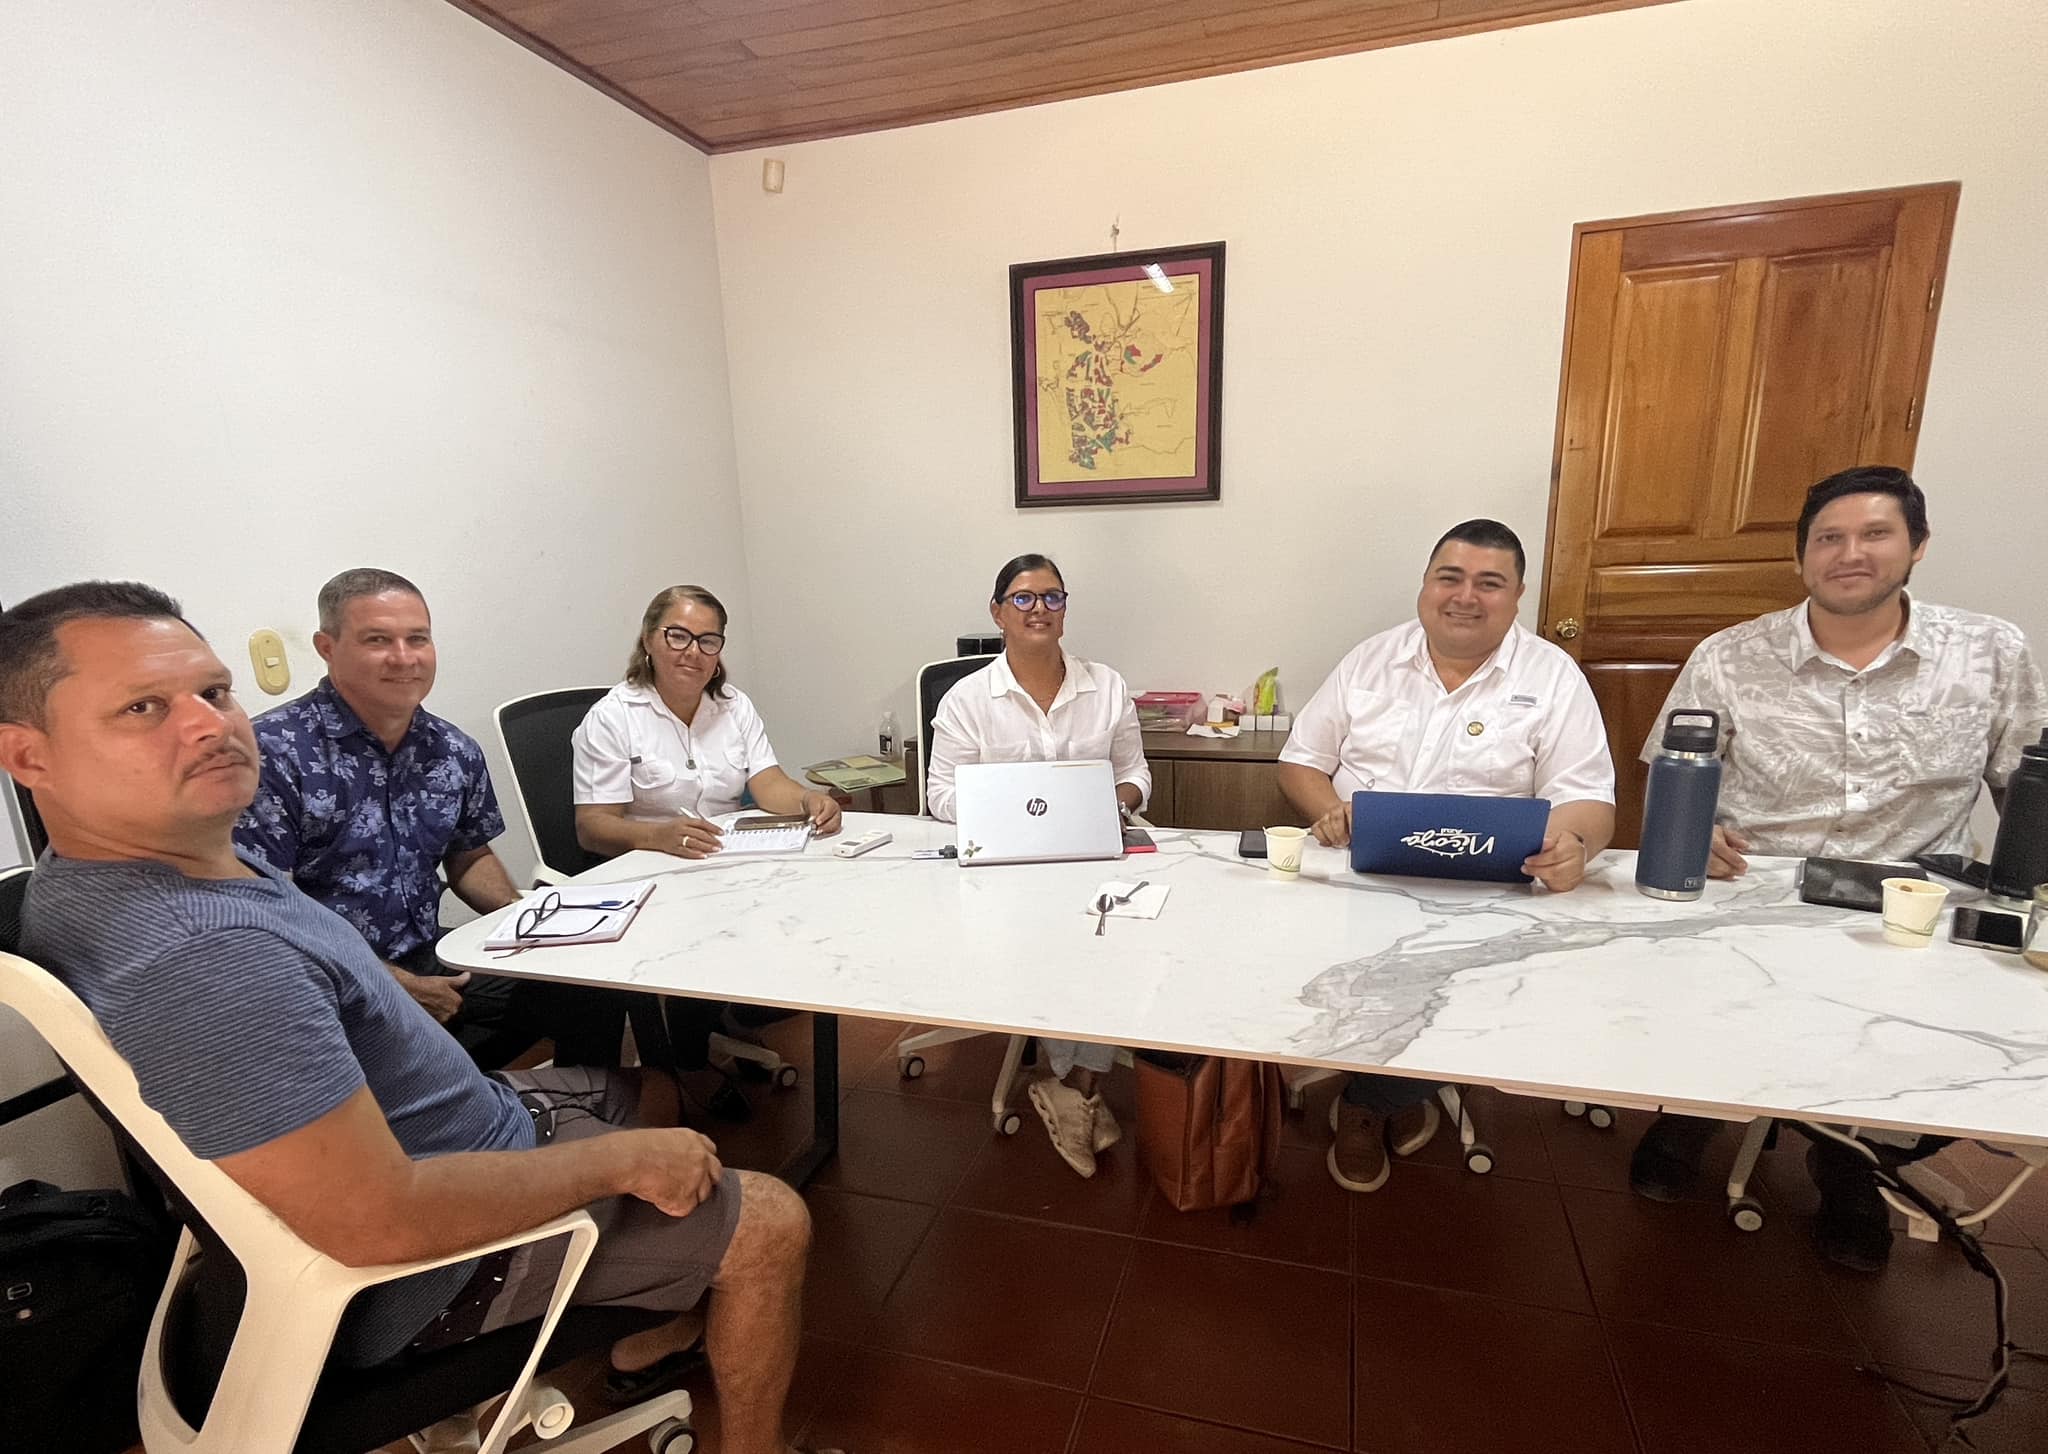 El Alcalde y el nuevo Concejo de Distrito de Nosara analizaron prioridades locales en su primer encuentro